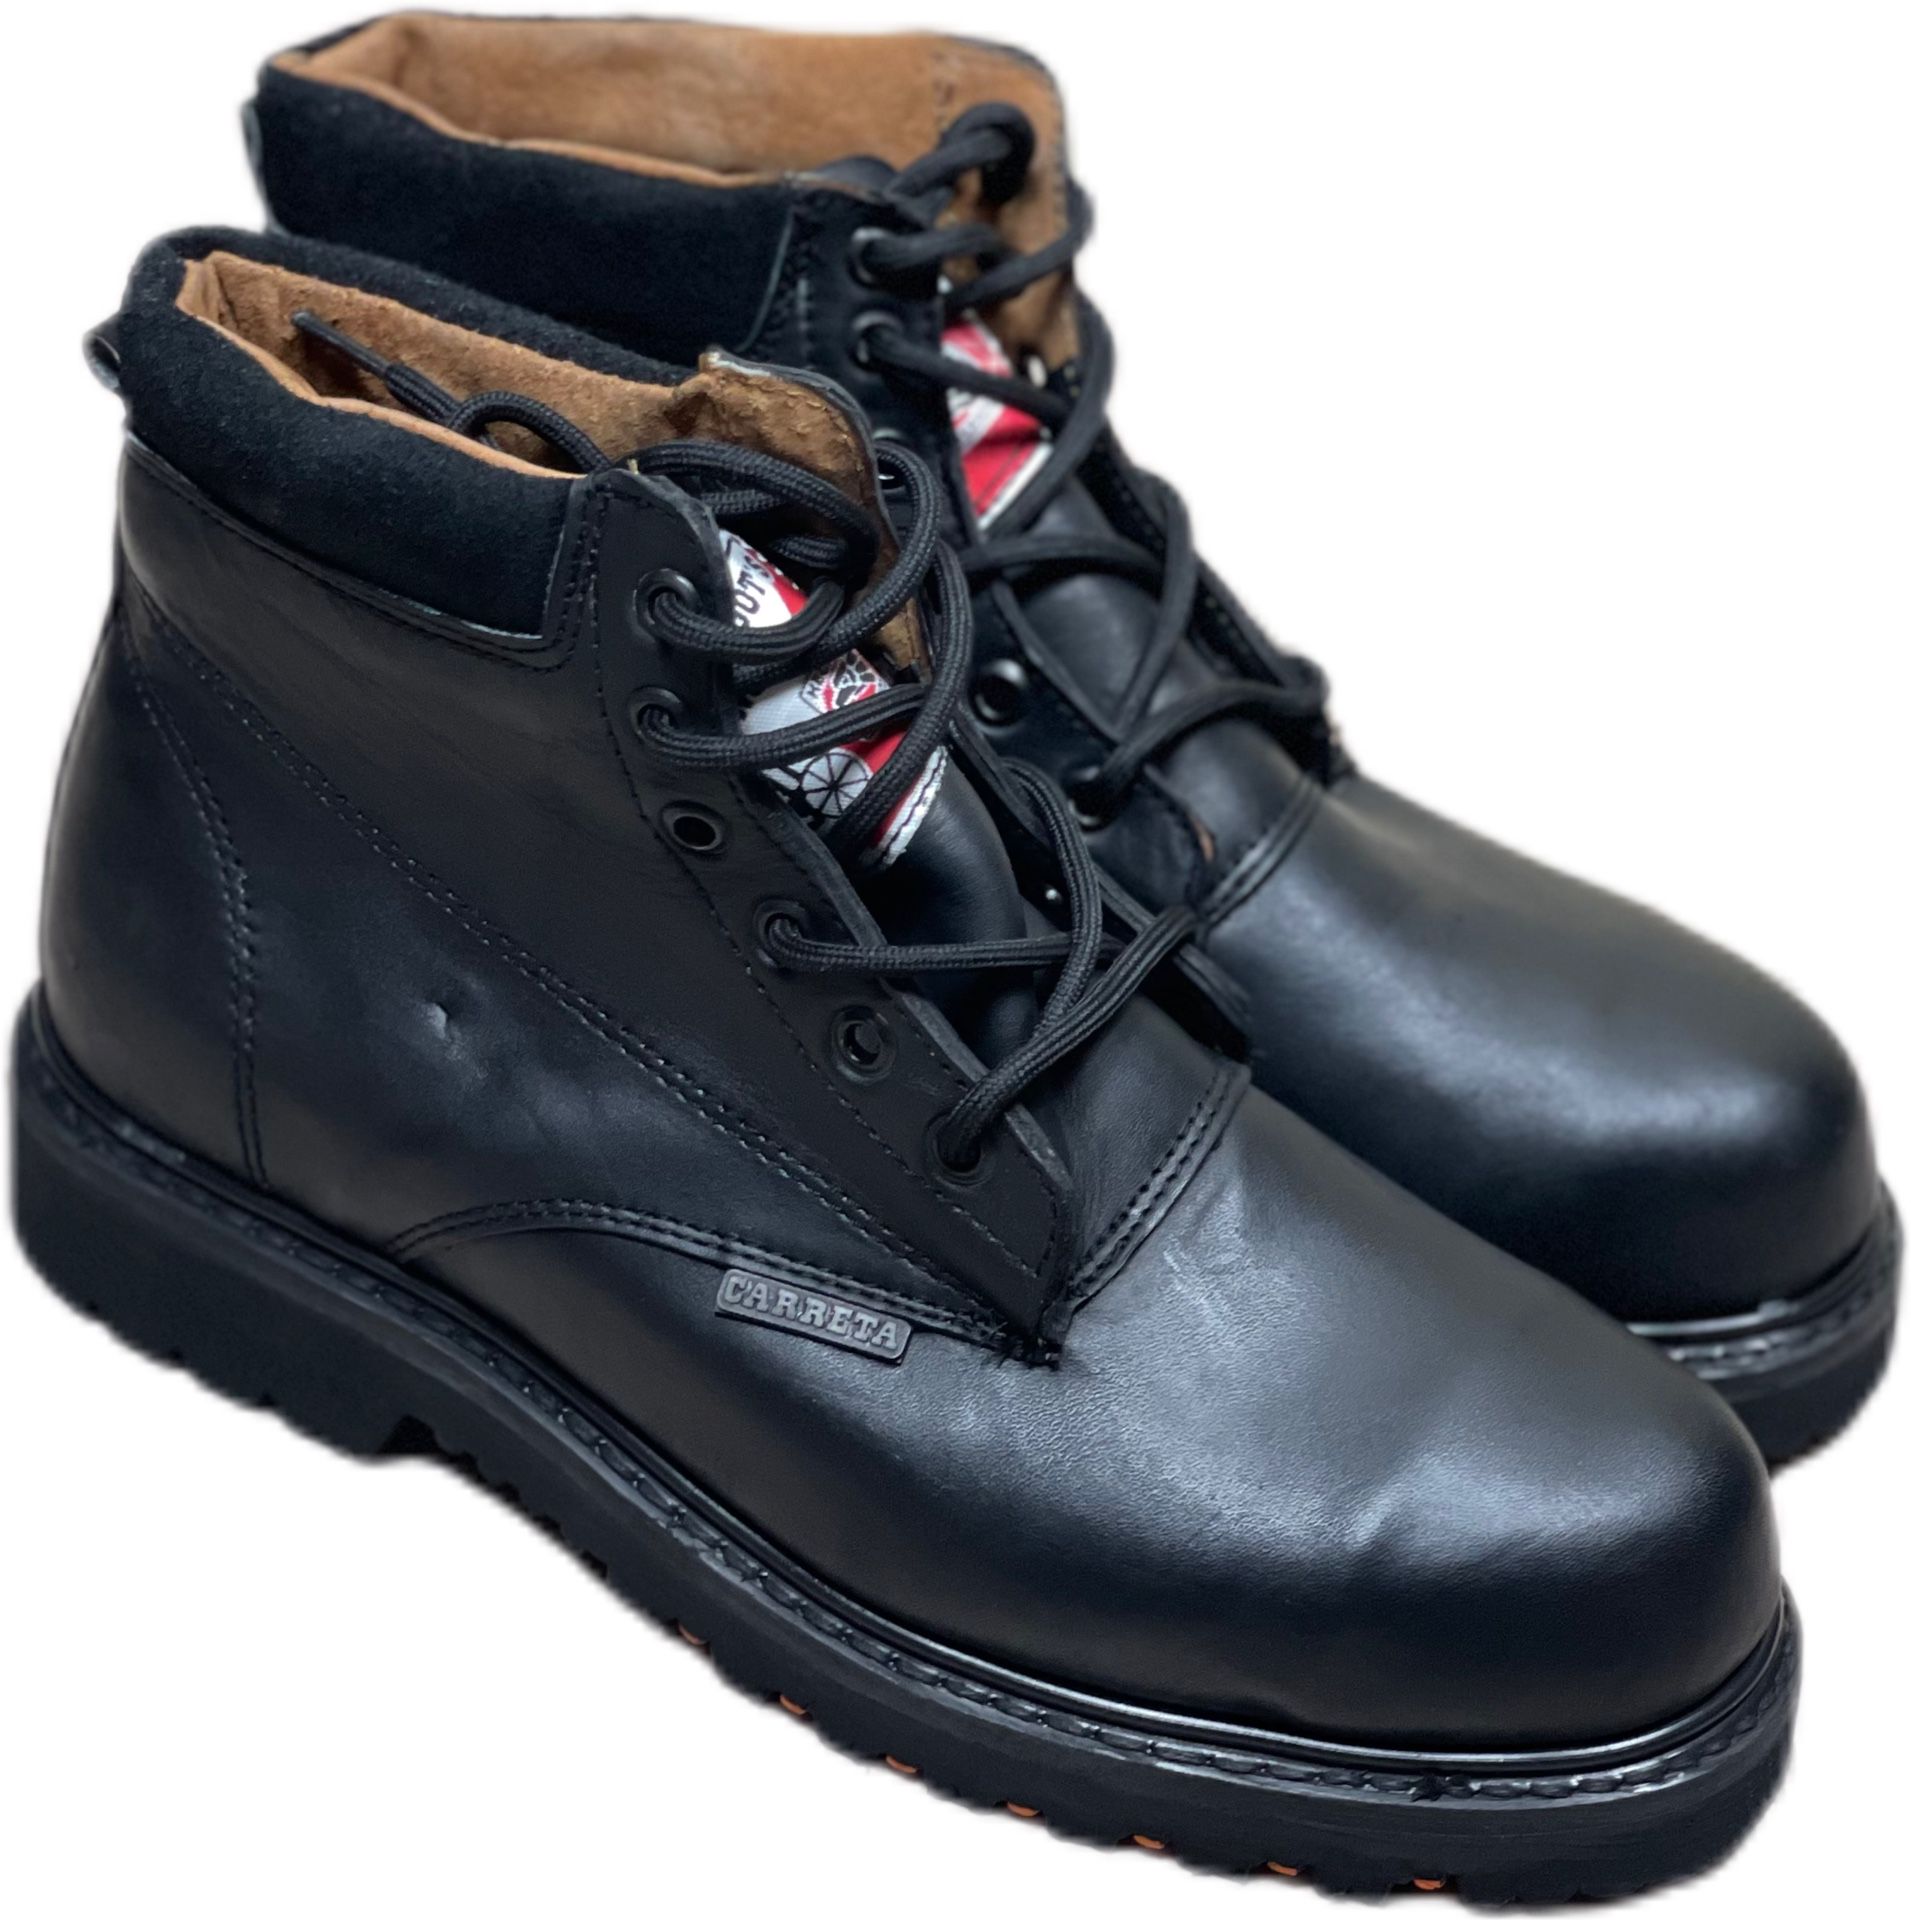 Steel Toe Work Boots - Botas De Trabajo Casco De Acero 